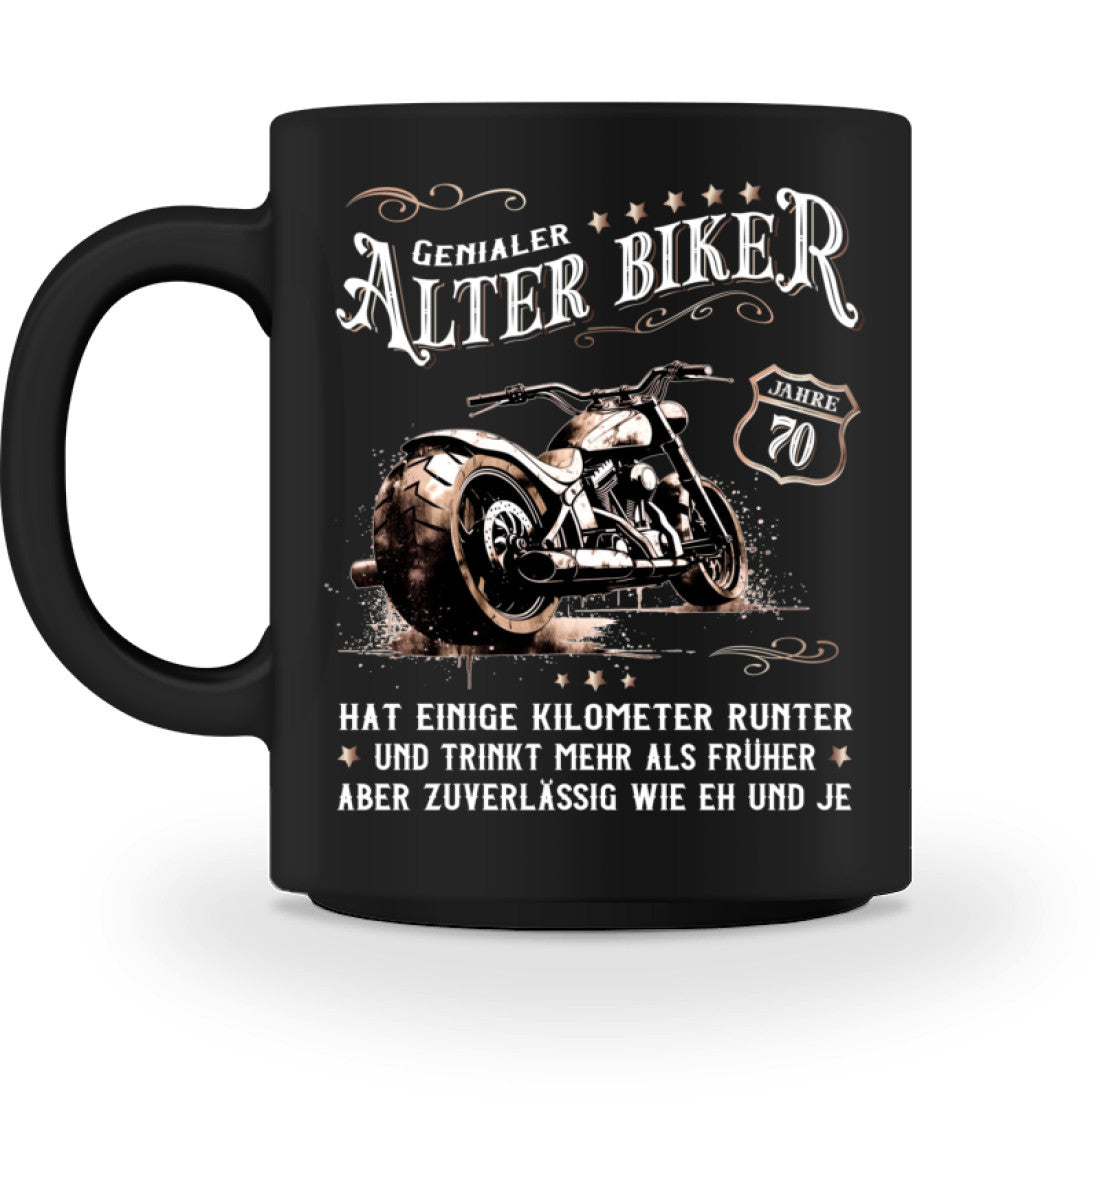 Eine Biker Geburtstags-Tasse für Motorradfahrer, von Wingbikers, mit dem beidseitigen Aufdruck, Alter Biker - 70 Jahre - Einige Kilometer runter, trinkt mehr - aber zuverlässig wie eh und je, in schwarz.